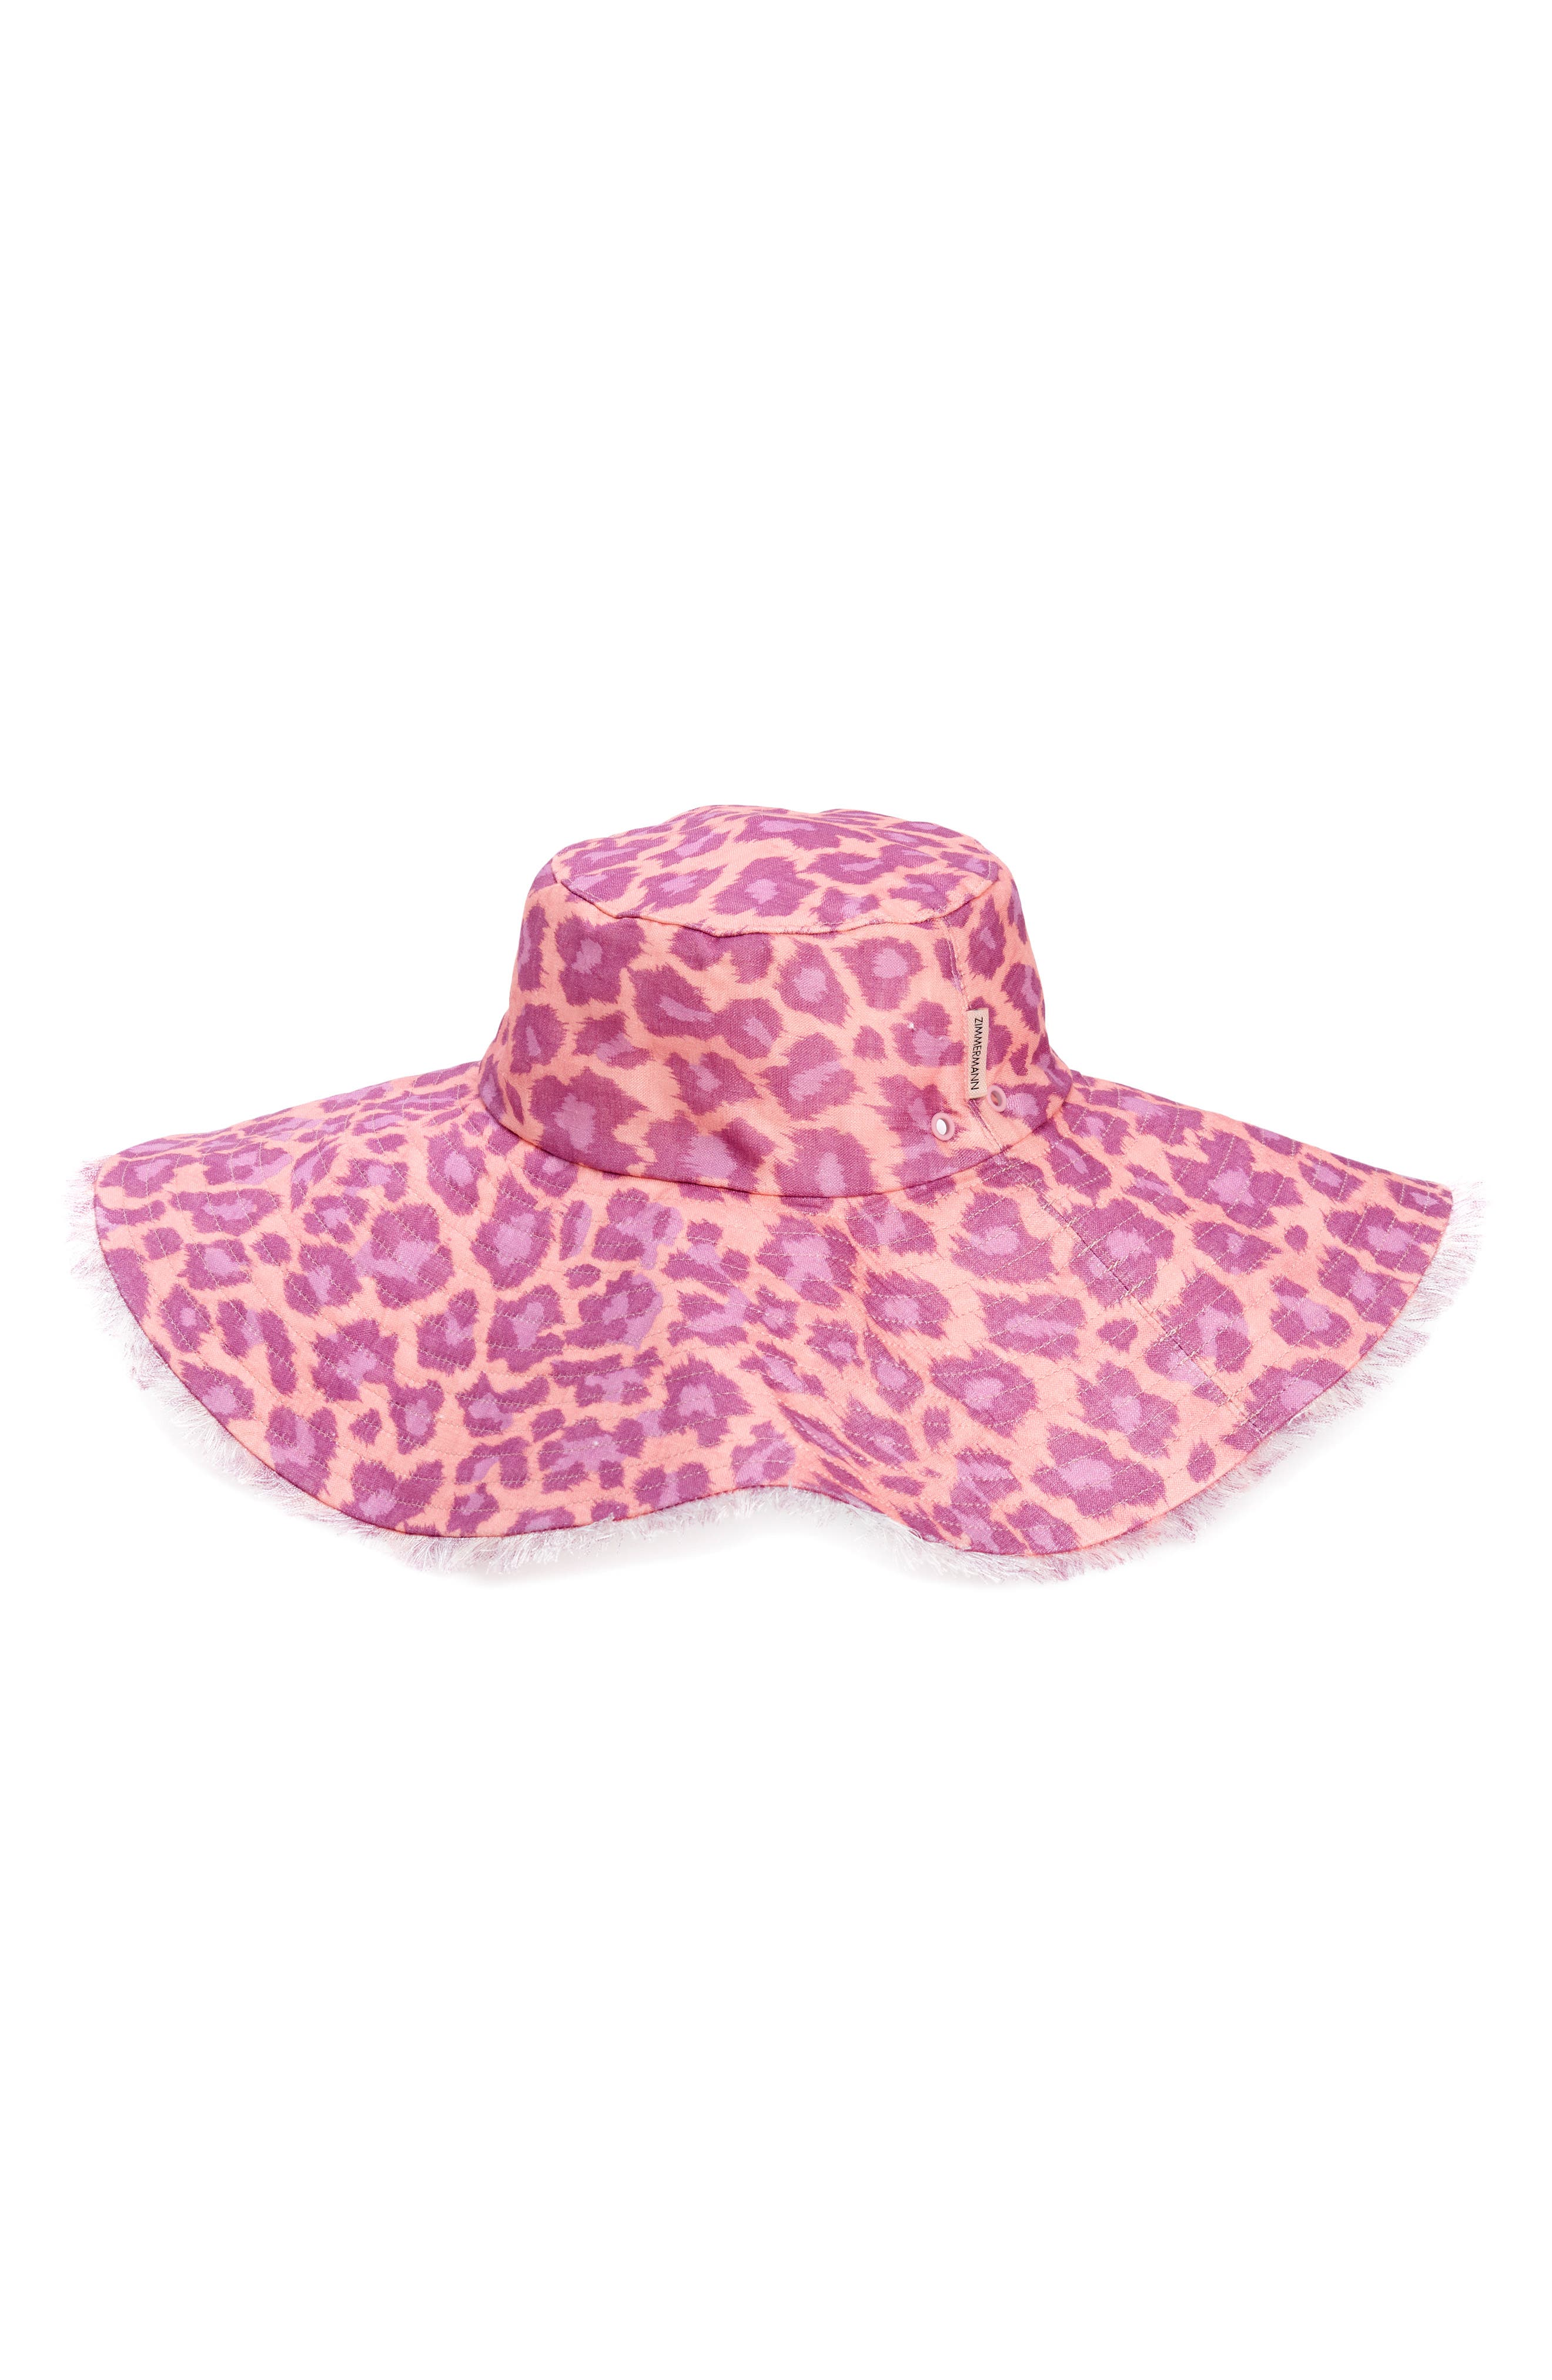 Zimmermann Reversible Floppy Linen Hat in Purple Leopard Pule